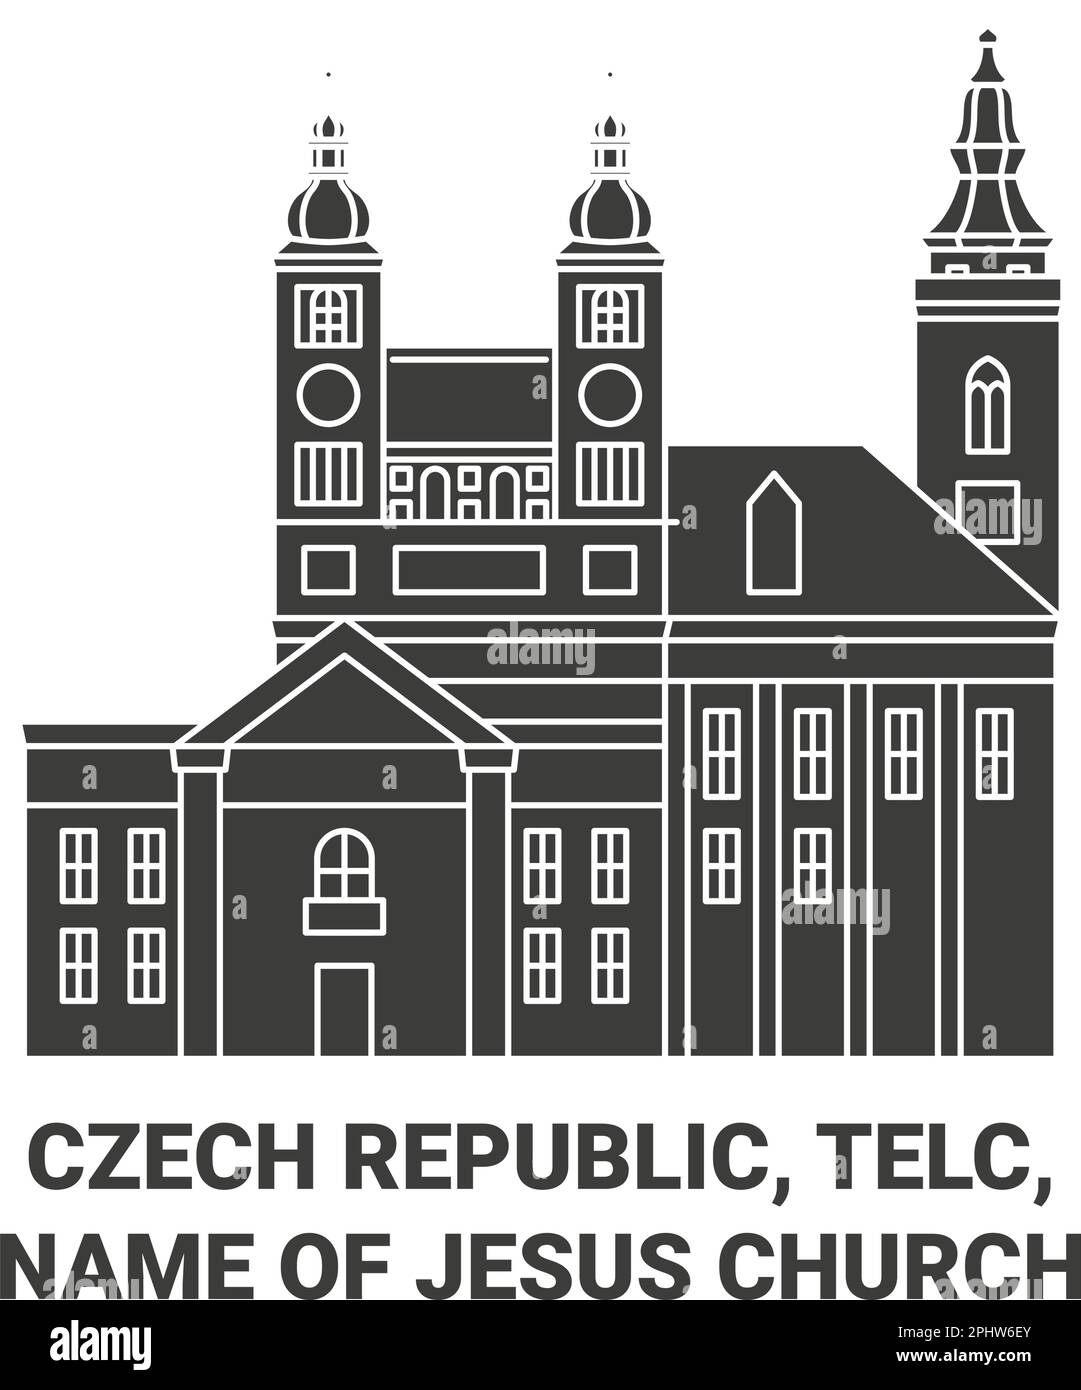 République tchèque, Telc, Nom de Jésus Voyage de l'église illustration du vecteur de repère Illustration de Vecteur